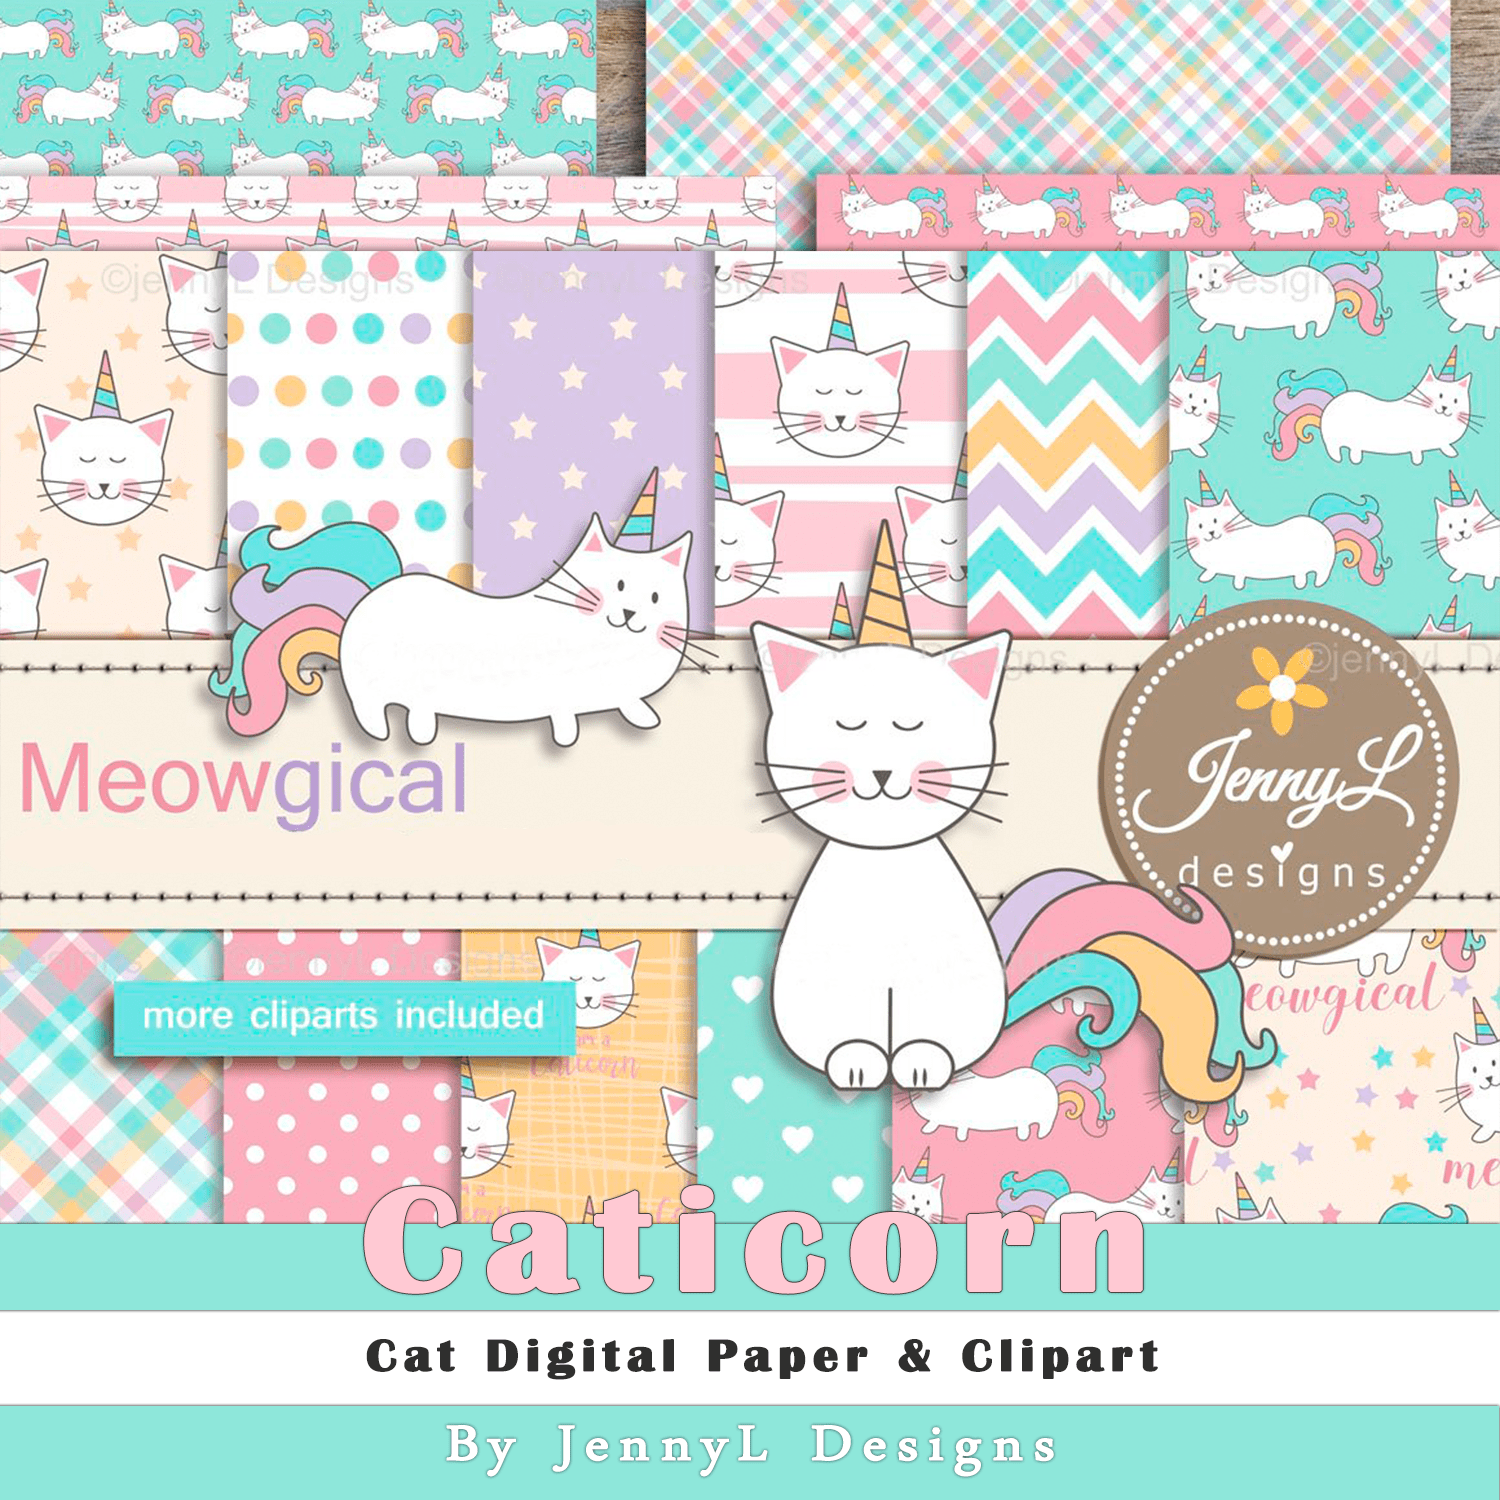 Caticorn Cat Digital Paper & Clipart cover.